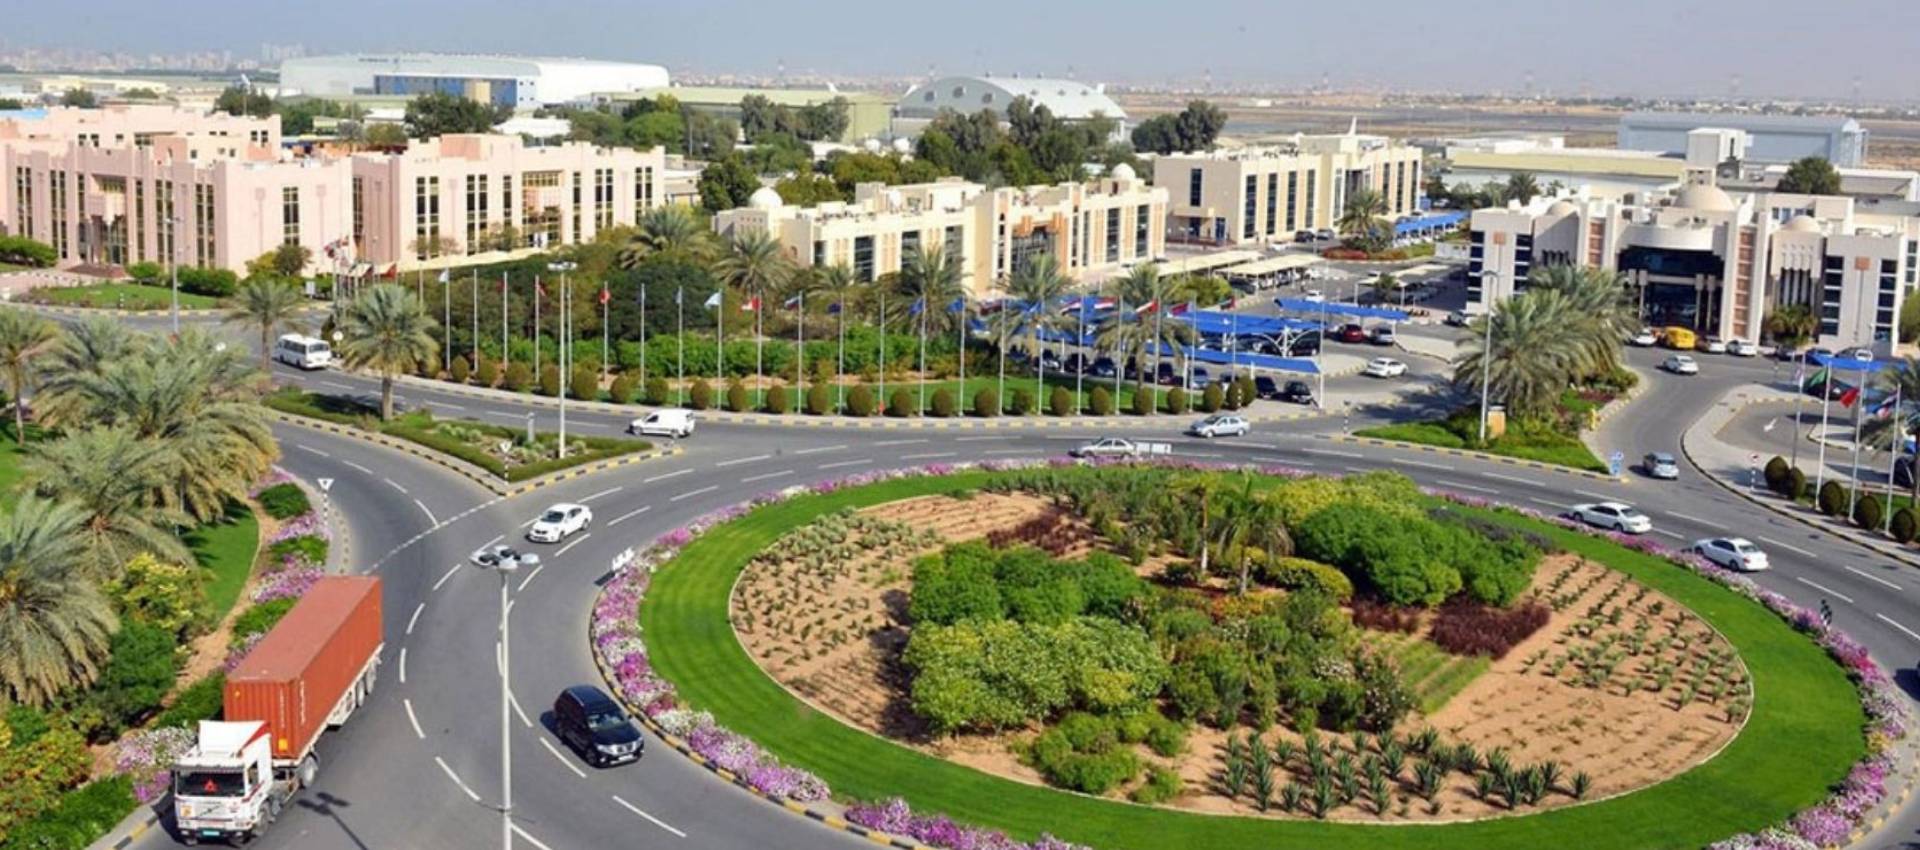 Sharjah Airport International Free Zone